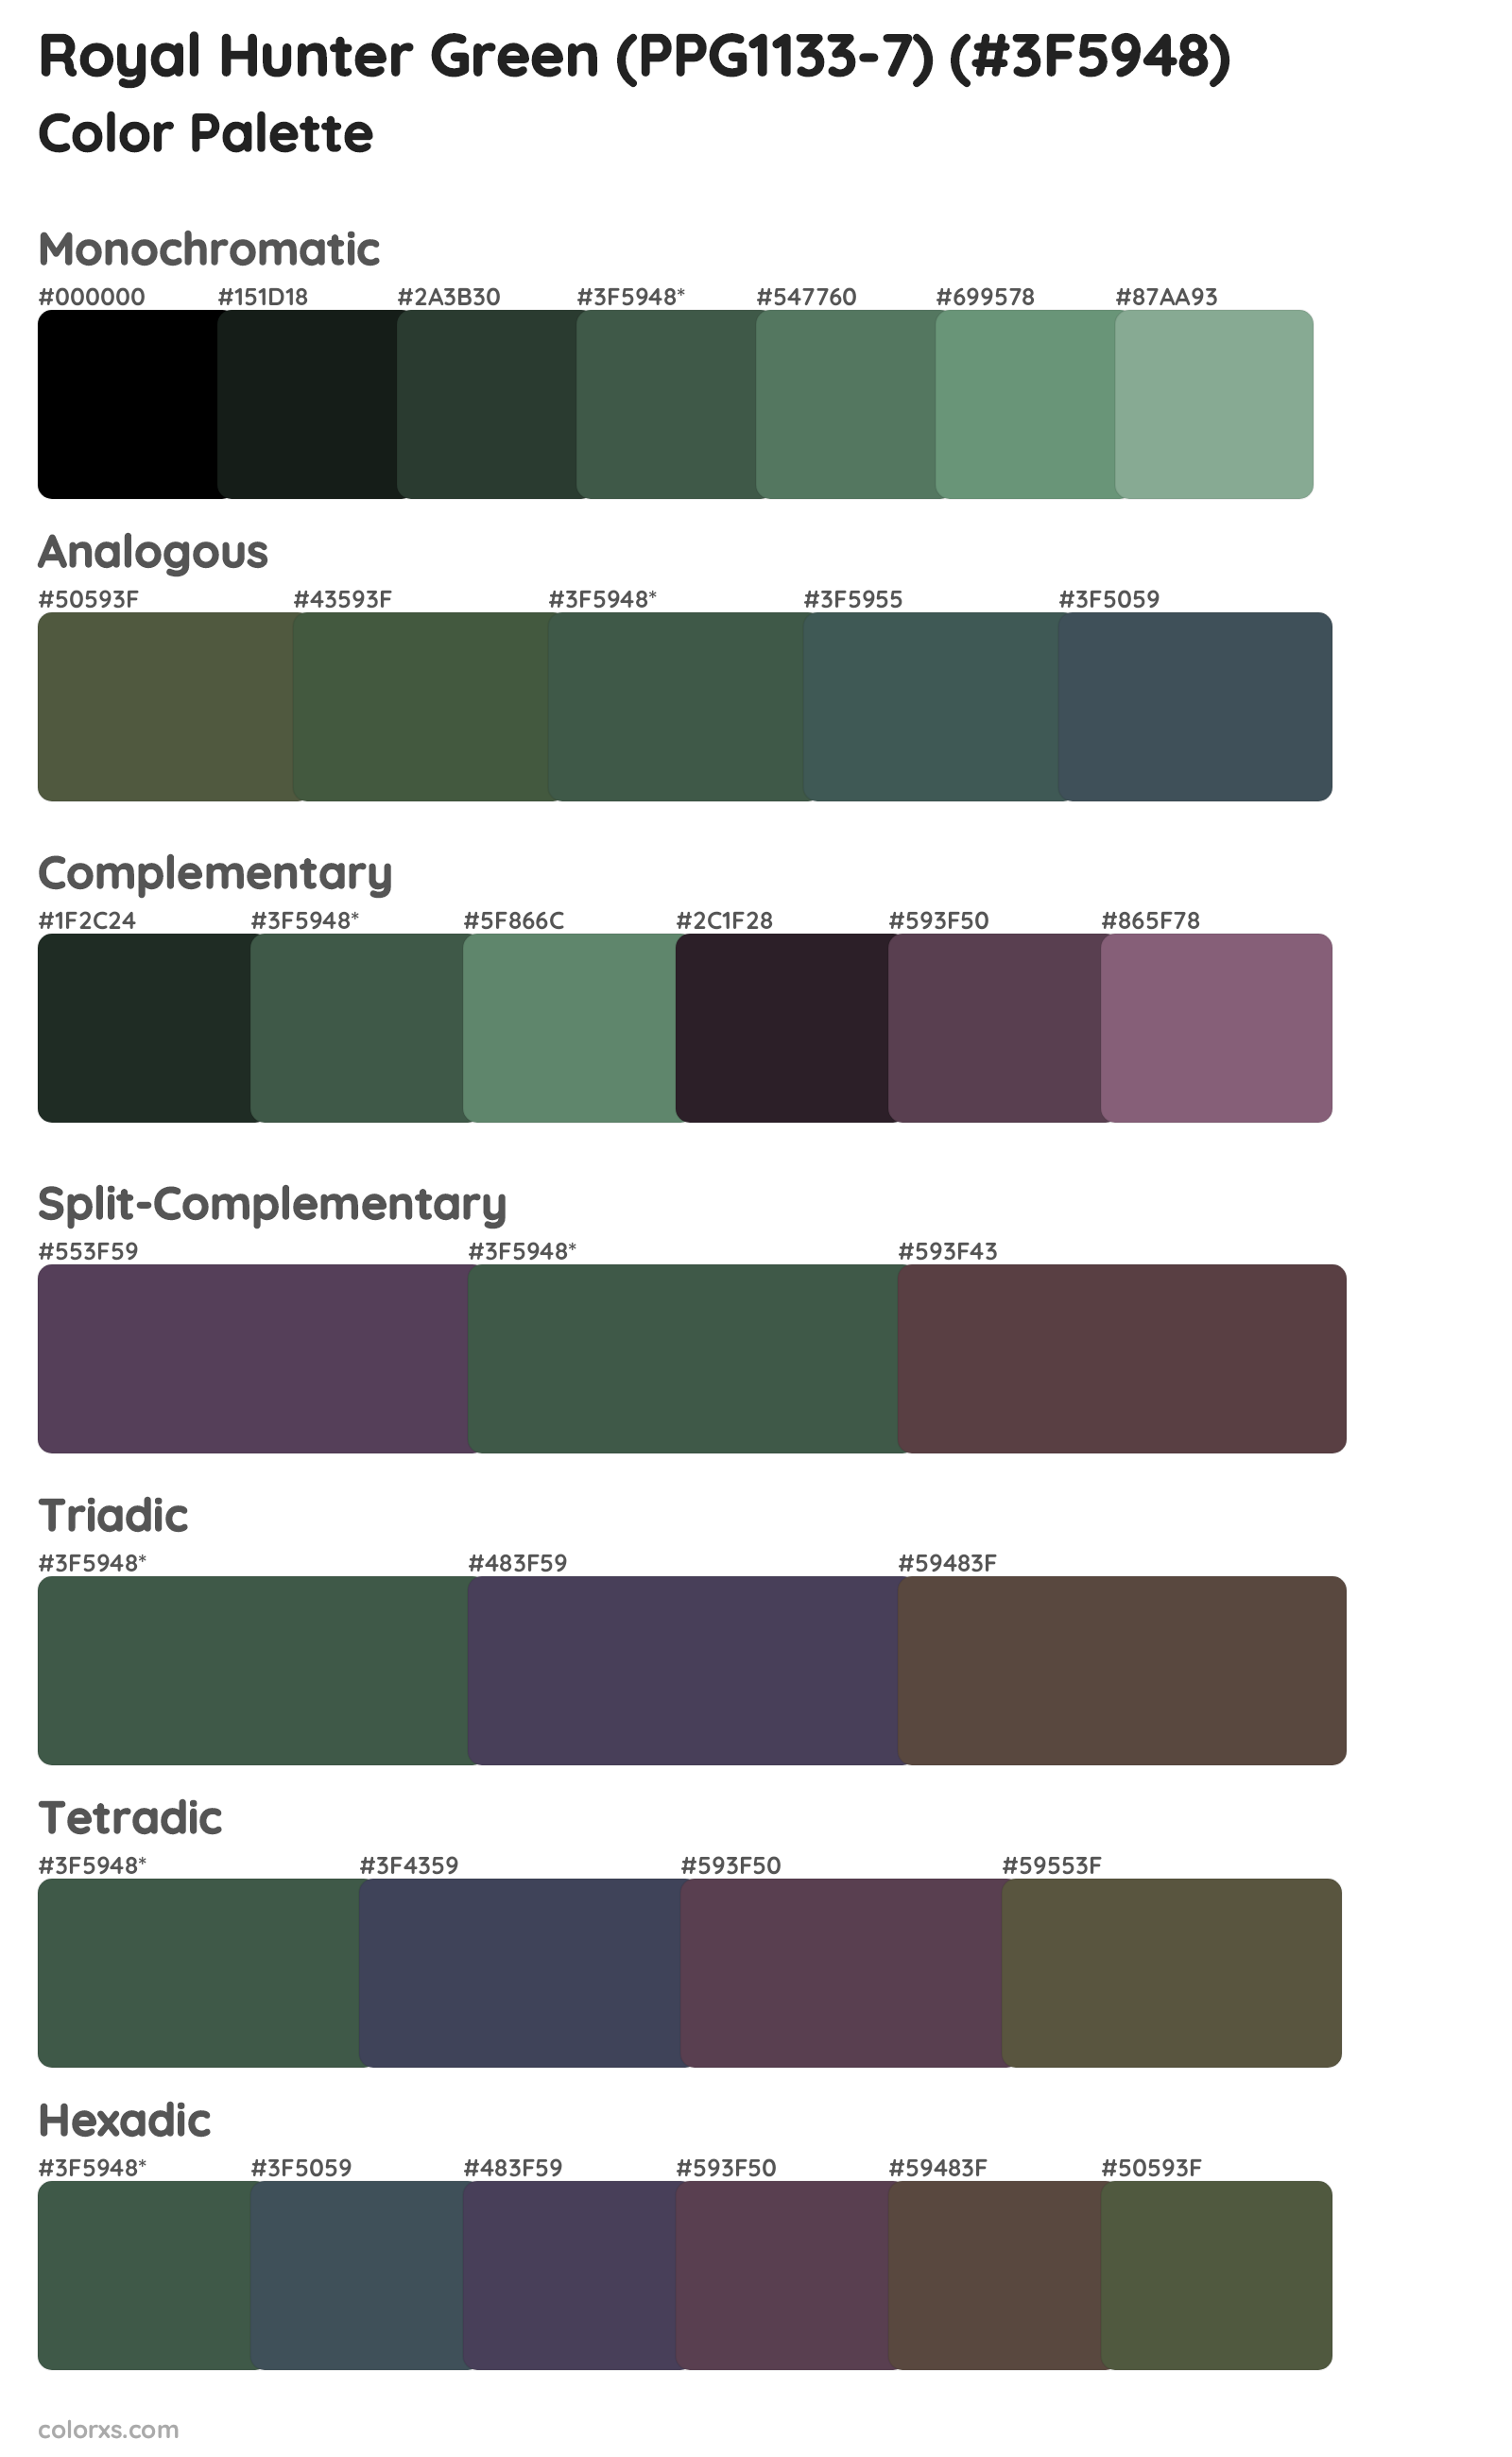 Royal Hunter Green (PPG1133-7) Color Scheme Palettes